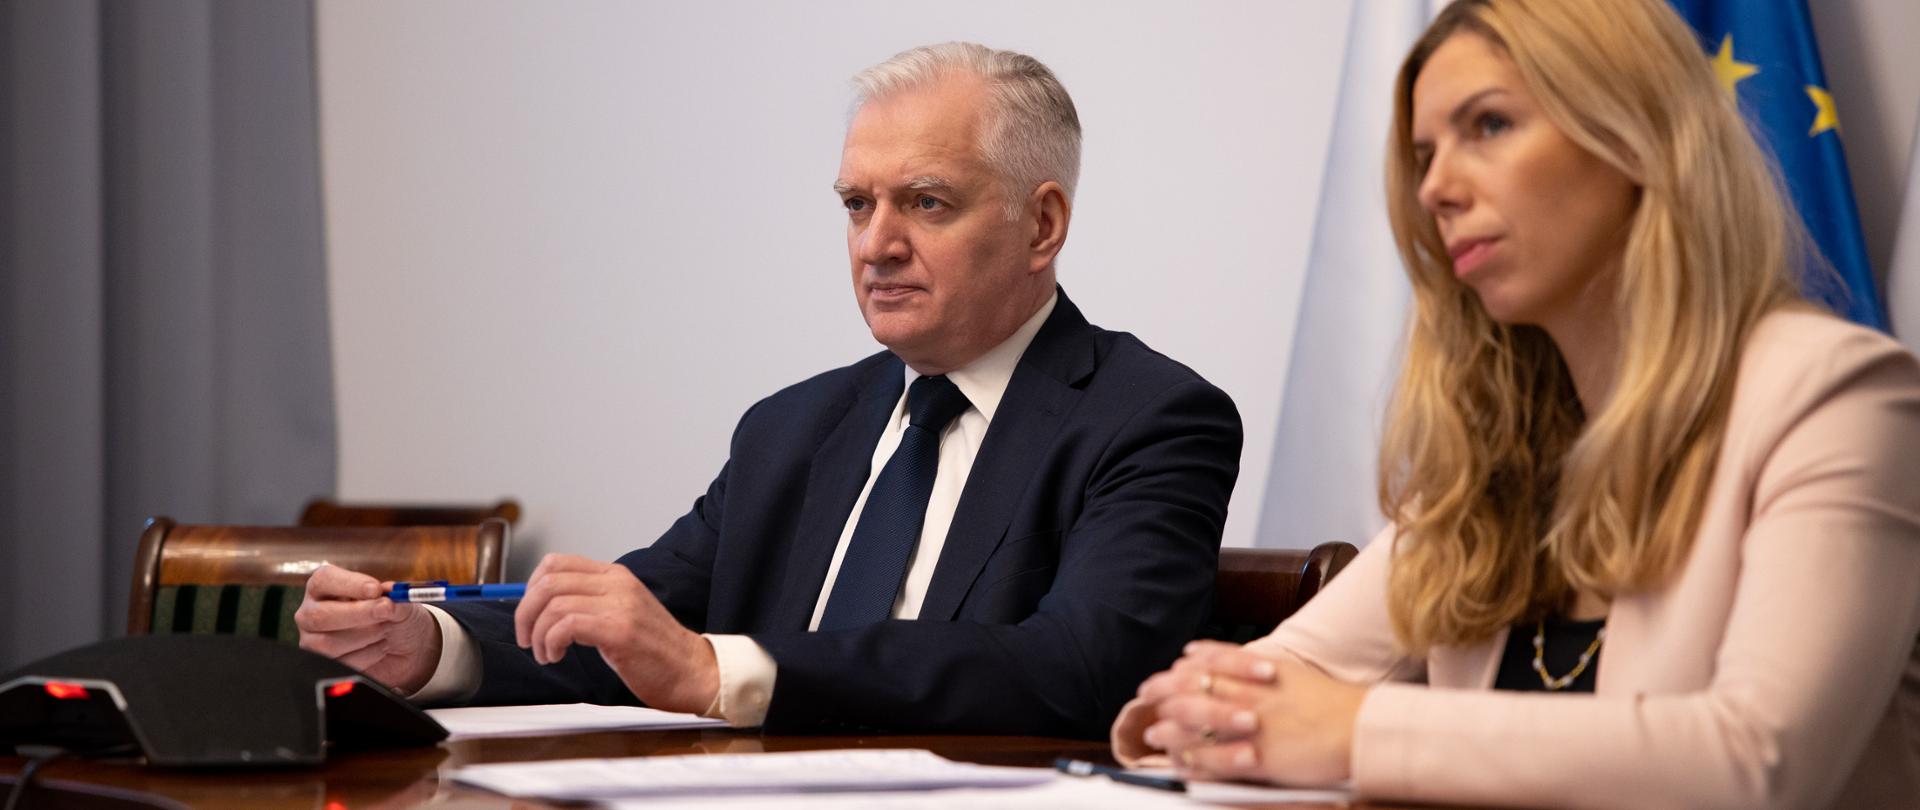 Od lewej, za stołem konferencyjnym, siedzą Jarosław Gowin i Anna Kornecka. Za nimi flagi polska i unijna, przed nimi notatki i mikrofon.